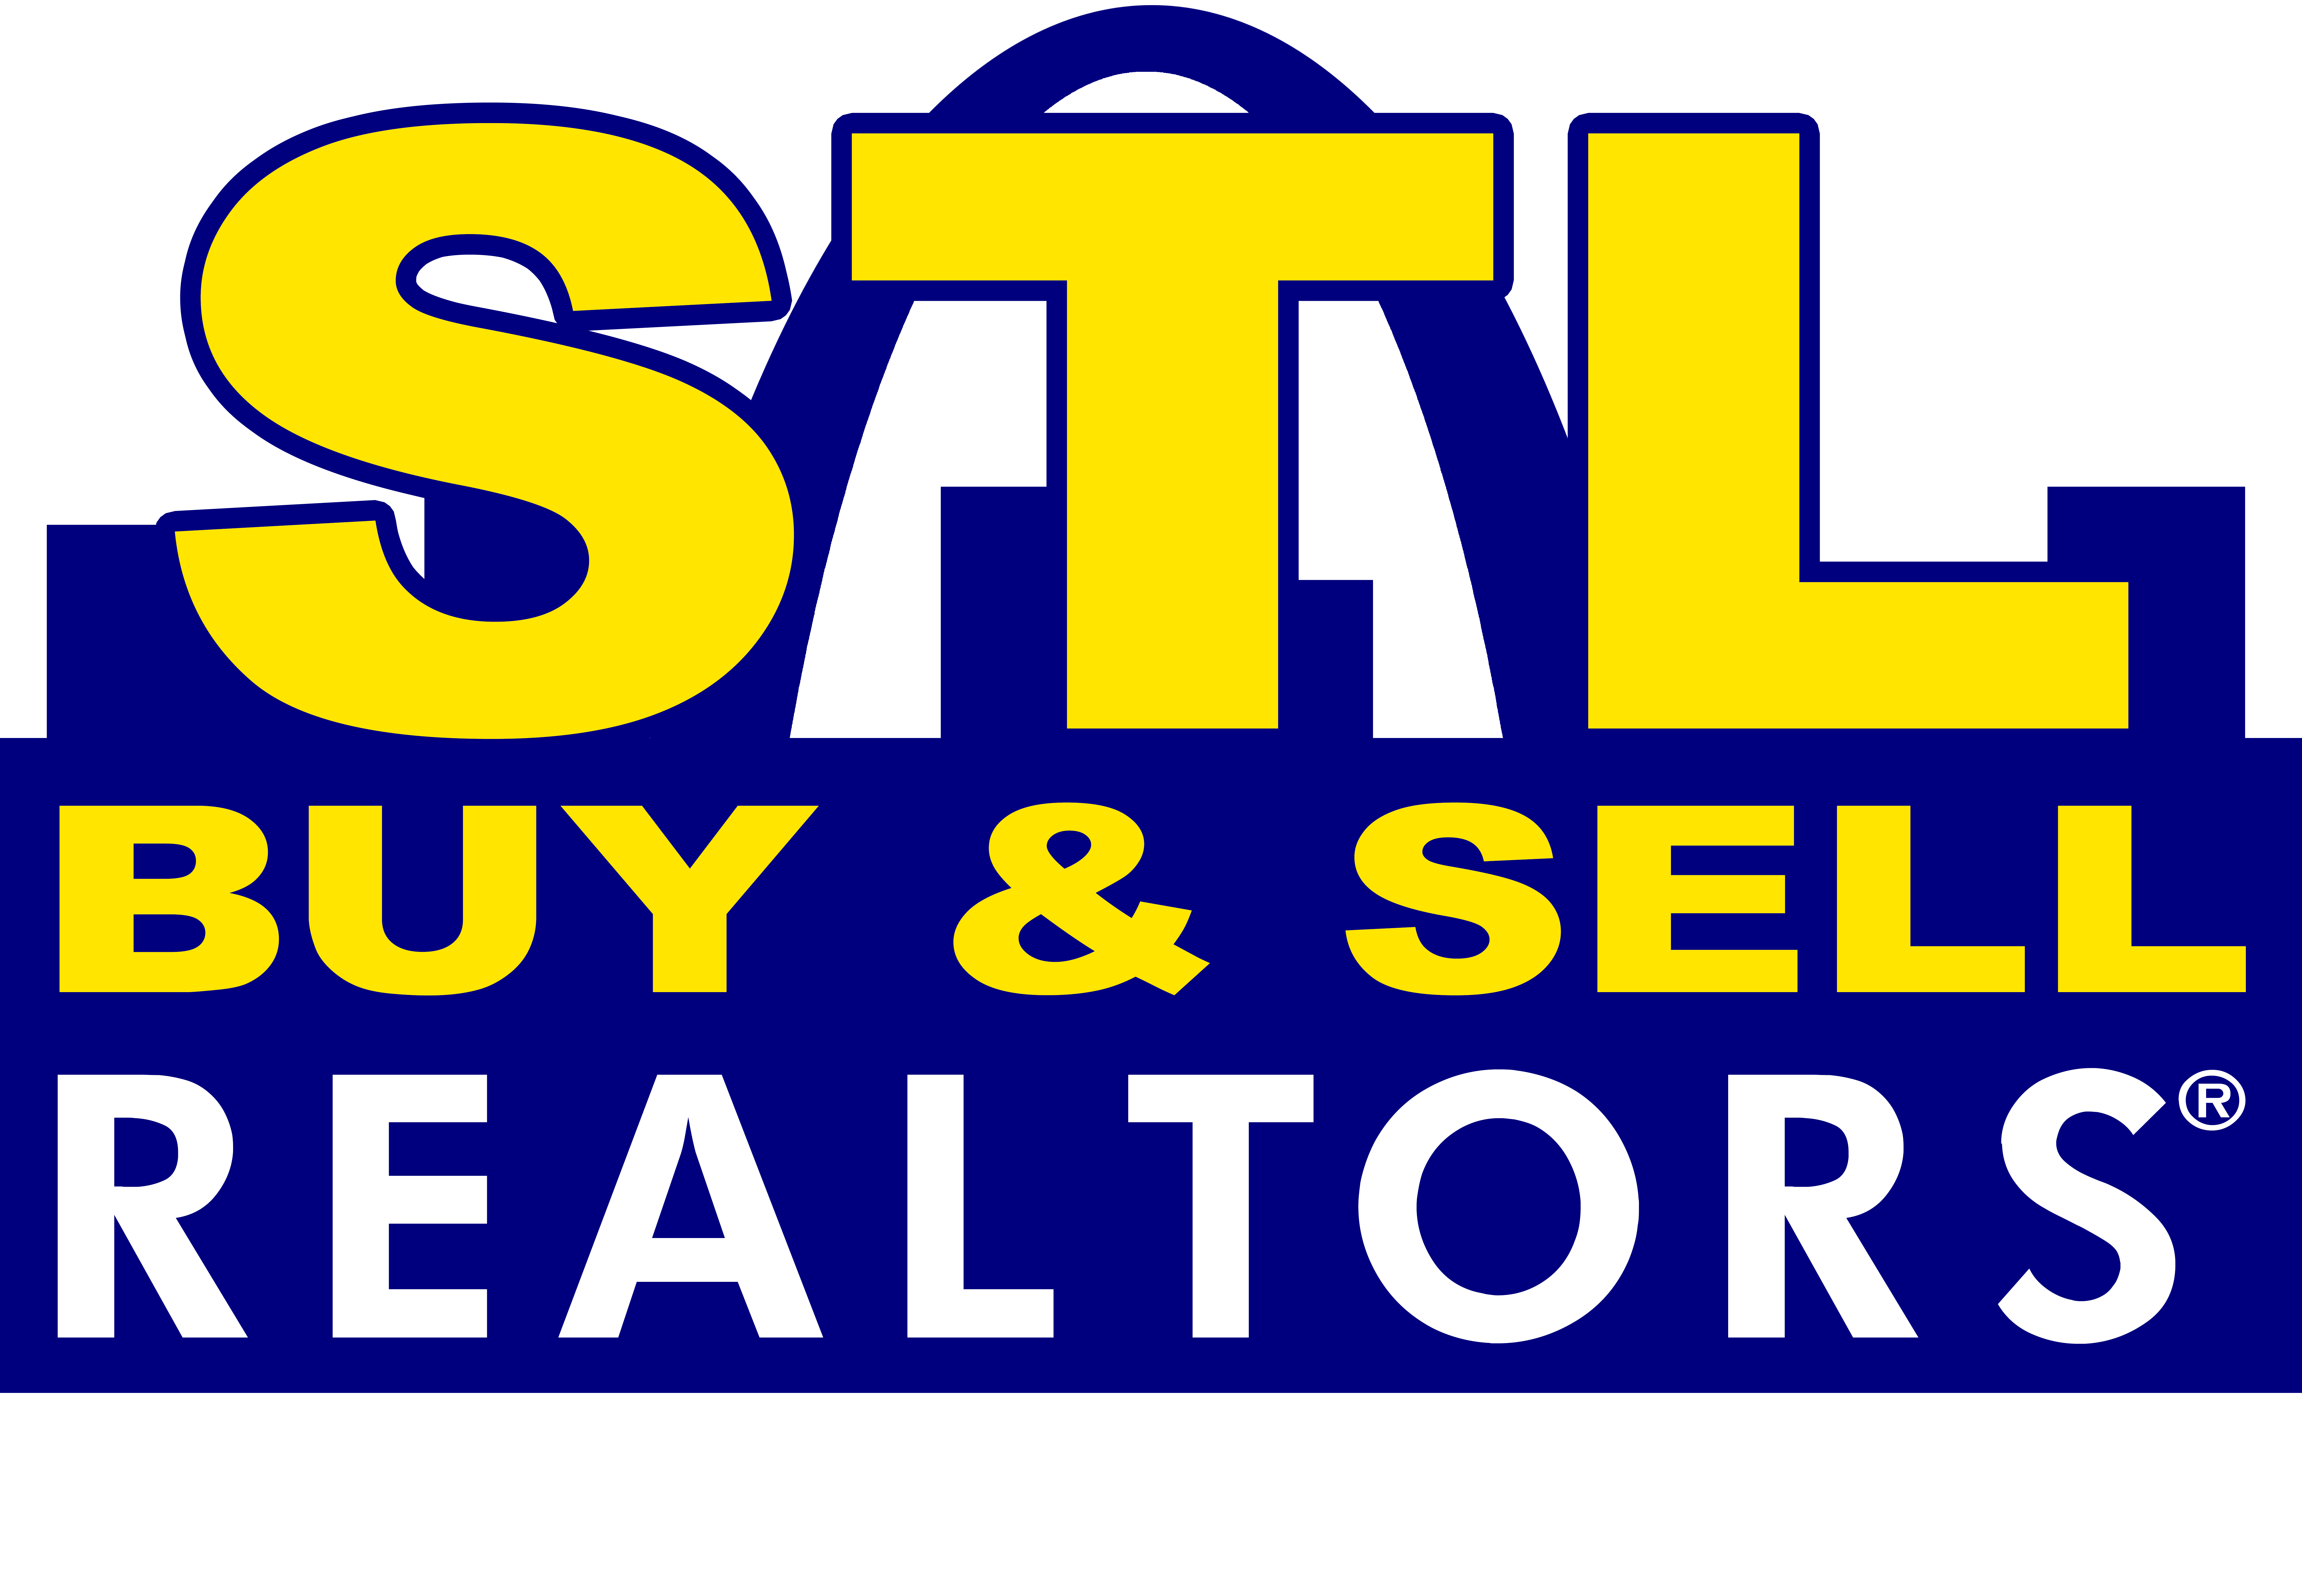 STL Buy & Sell, REALTORS®